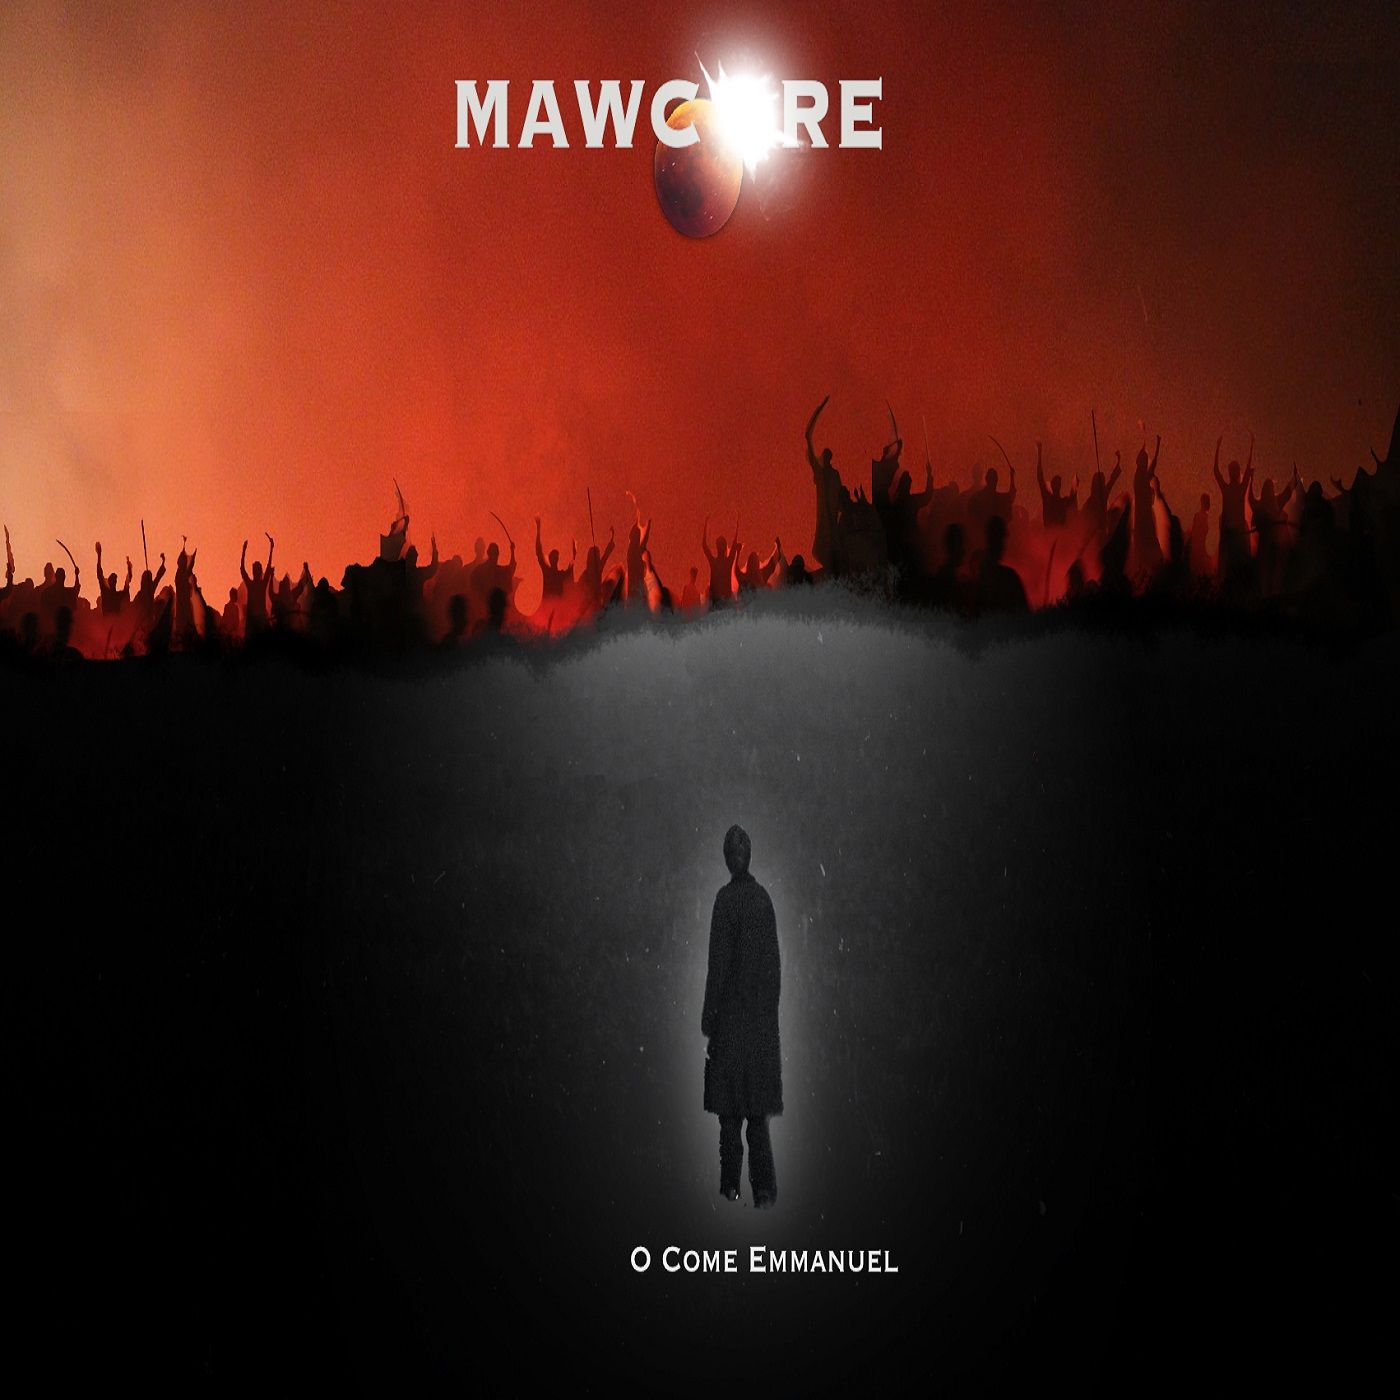 Mawcore - O Come Emmanuel